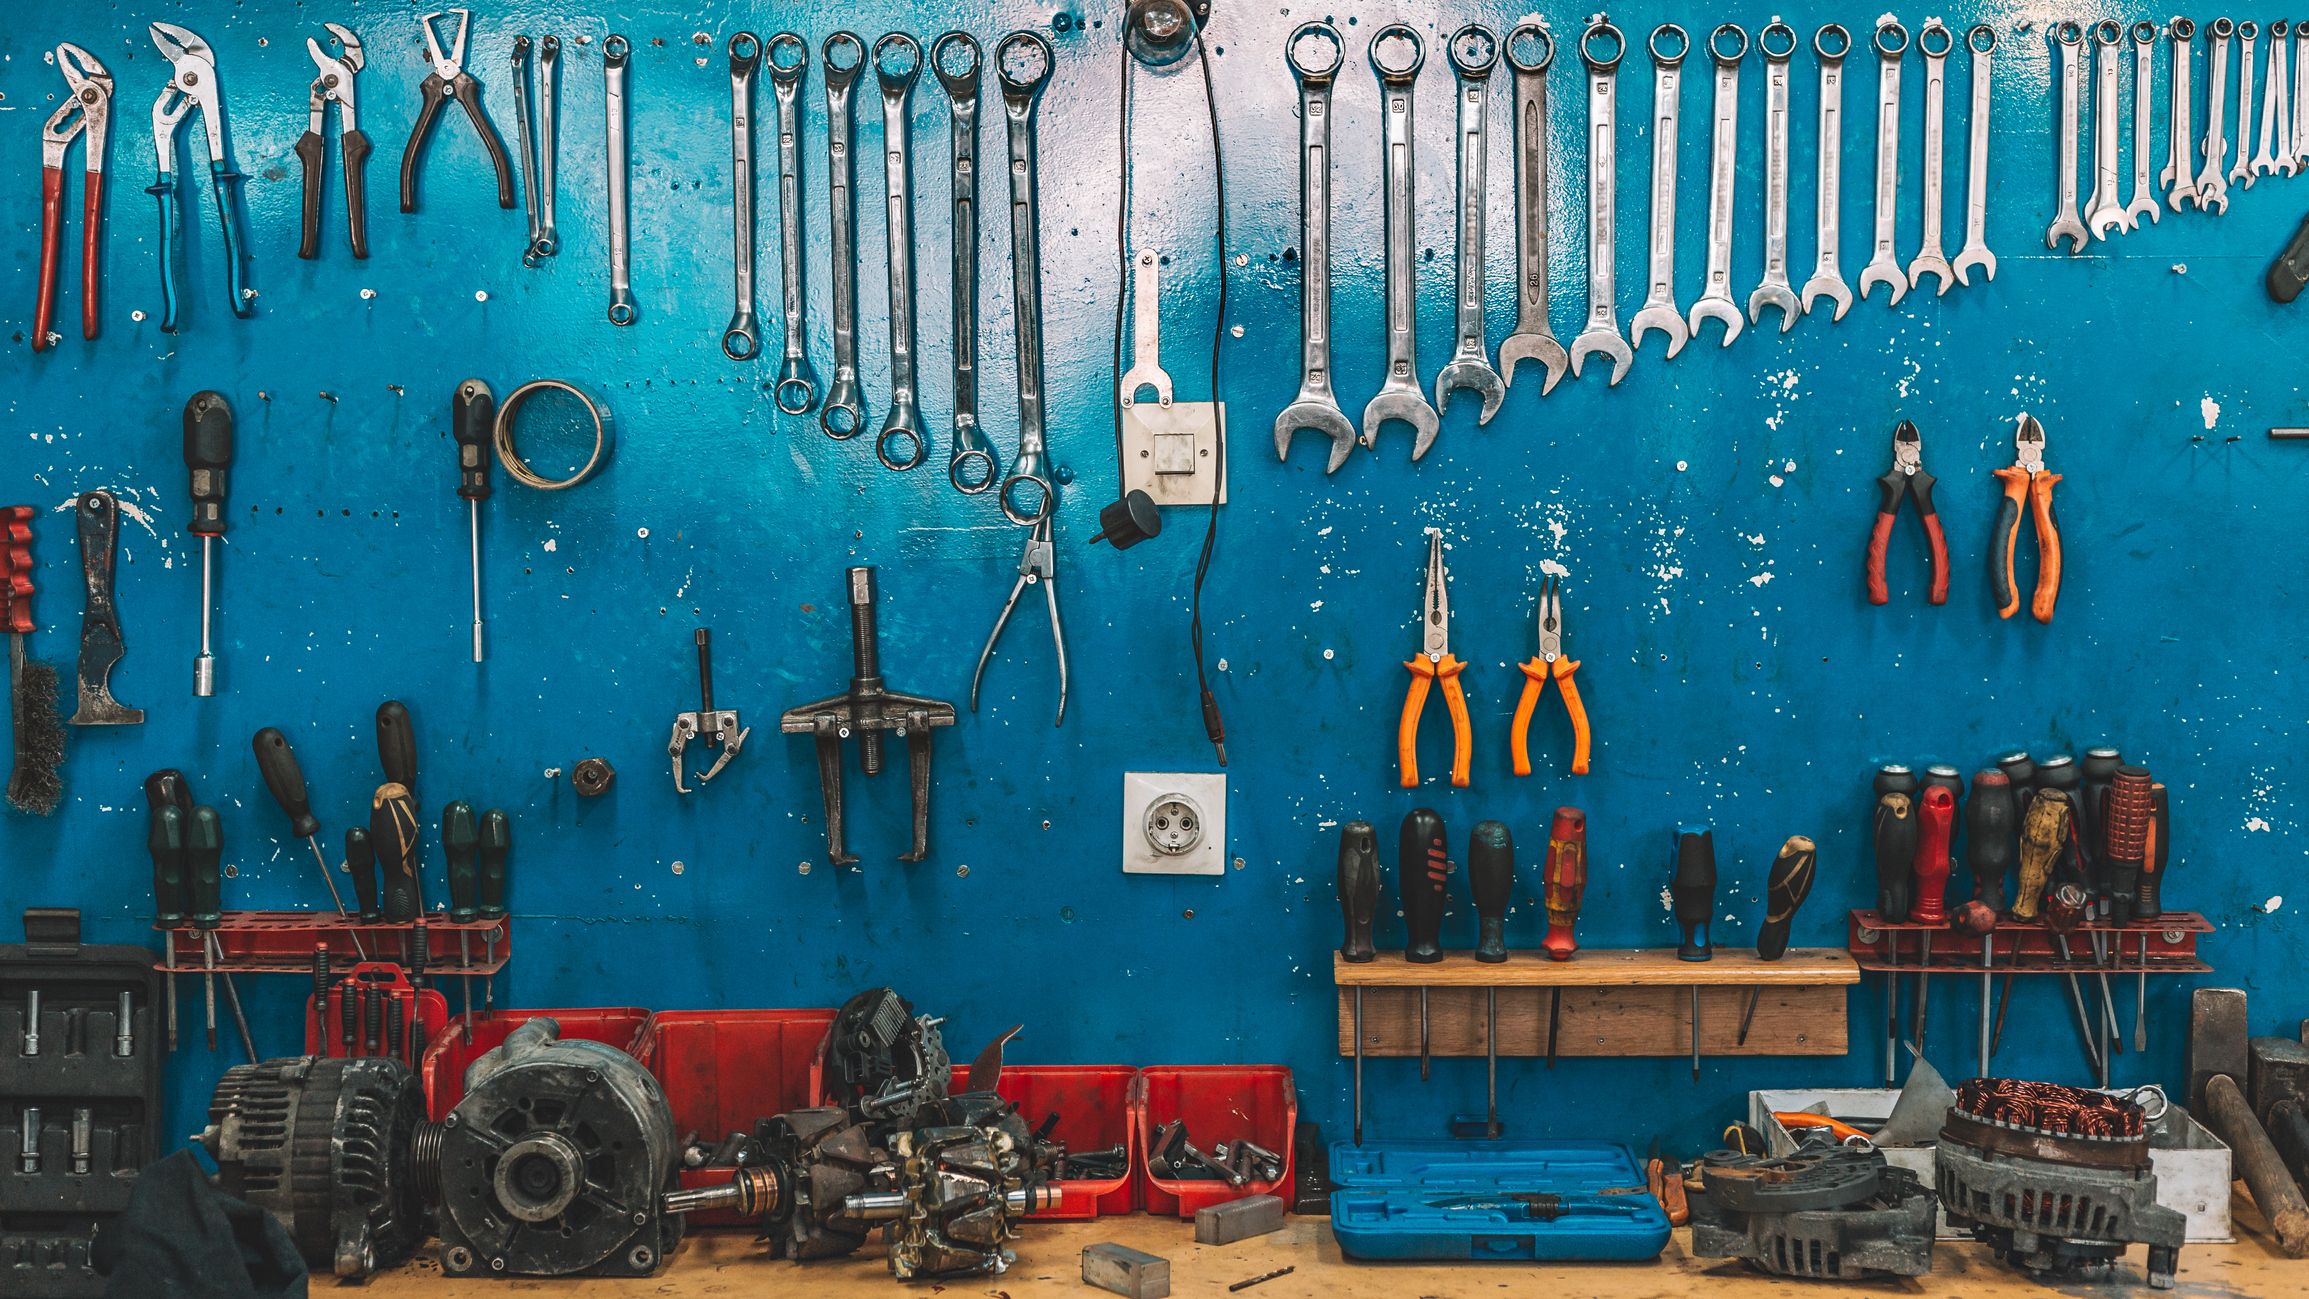 Auto Mechanic Tools List, Garage tools, automobile, Tools kit